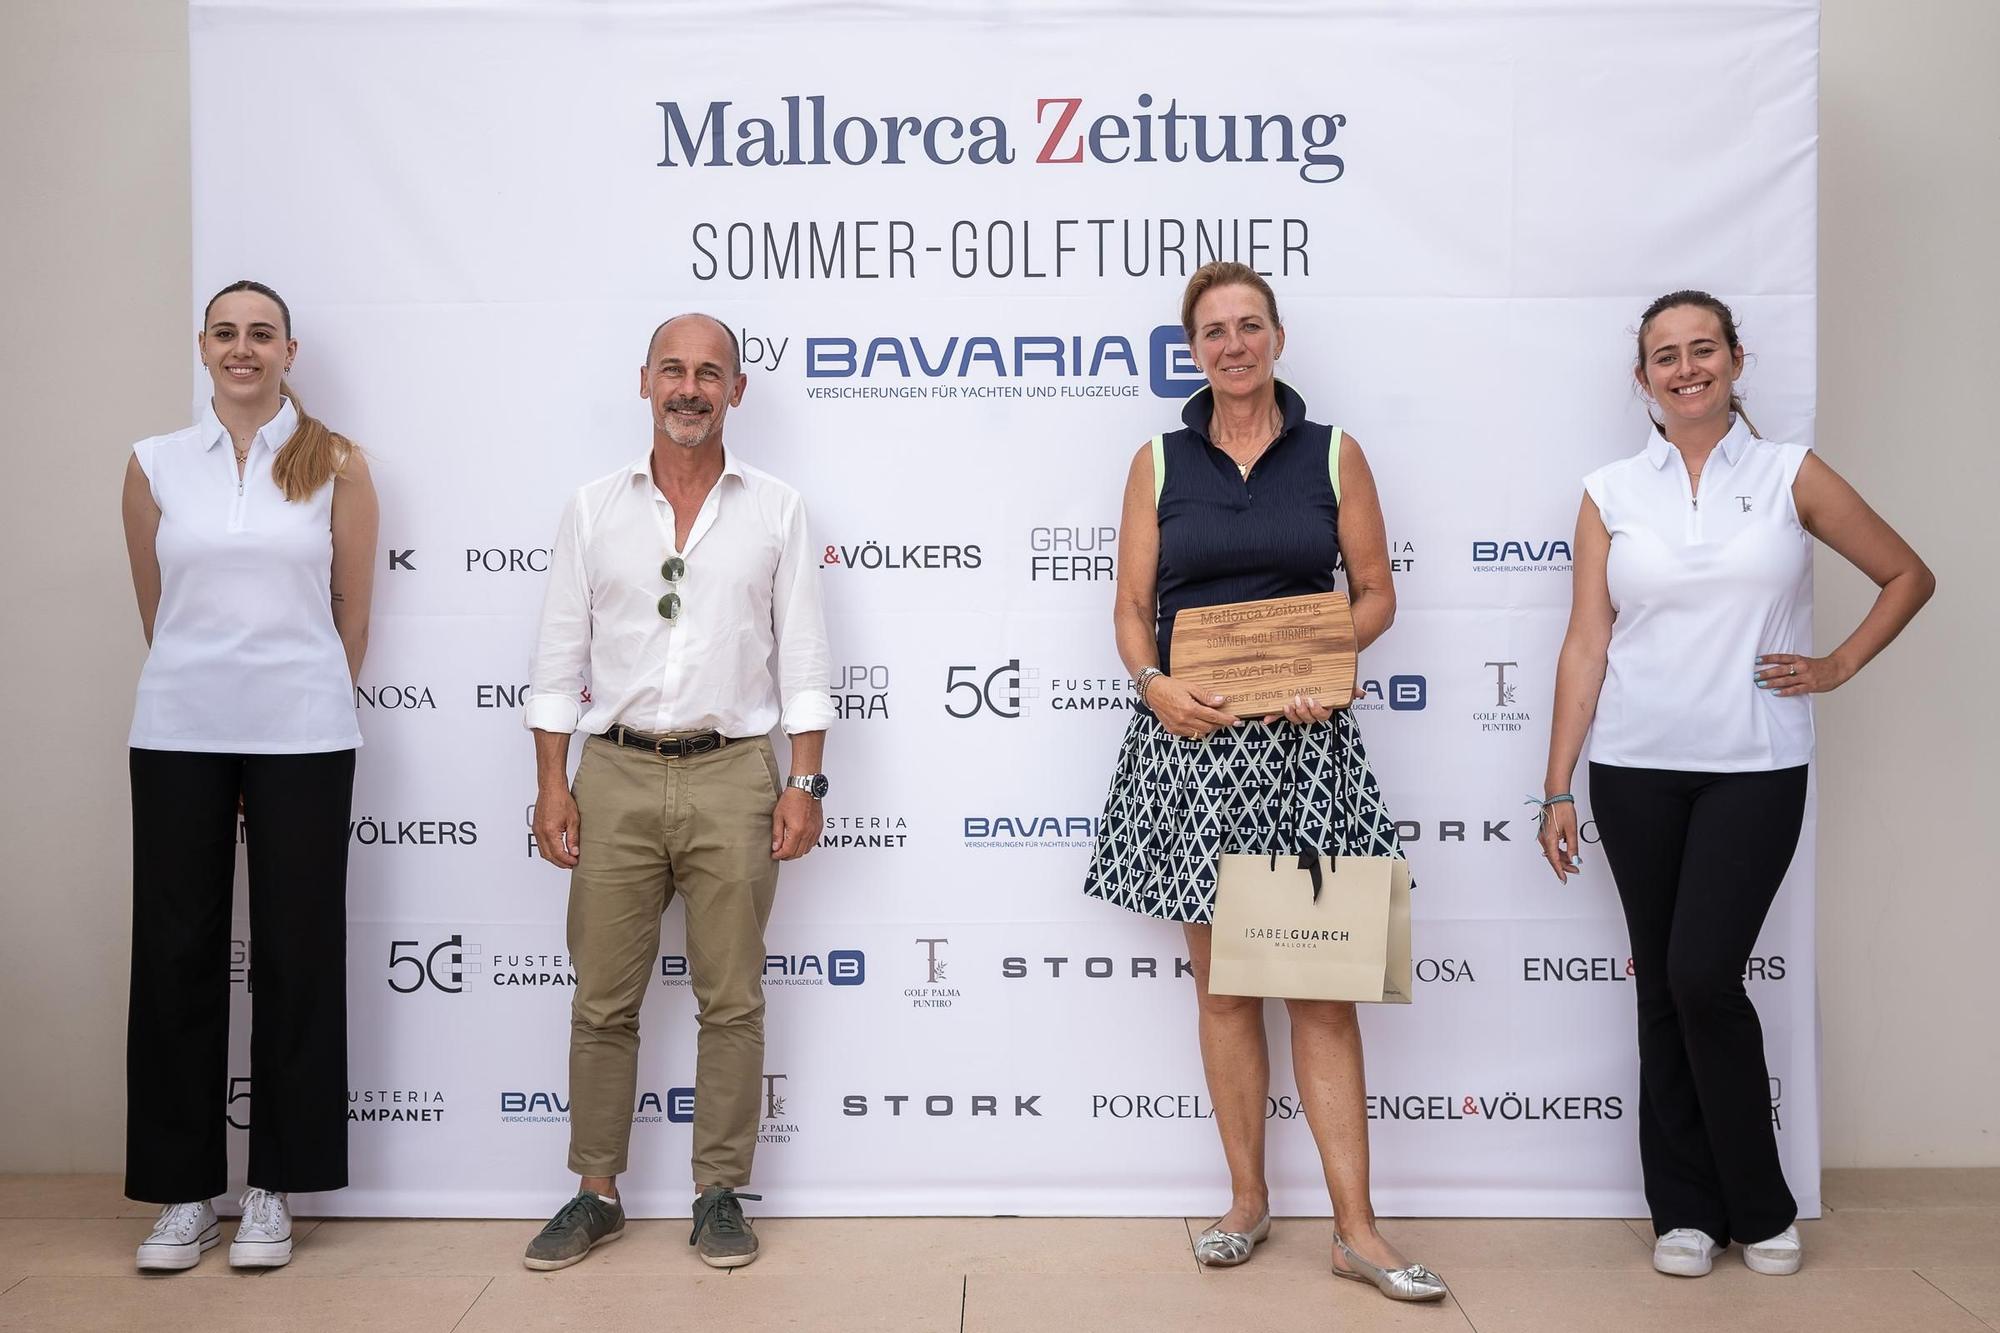 Premiere für das I. Sommer-Golfturnier by Bavaria der Mallorca Zeitung - Feier und Siegerehrung